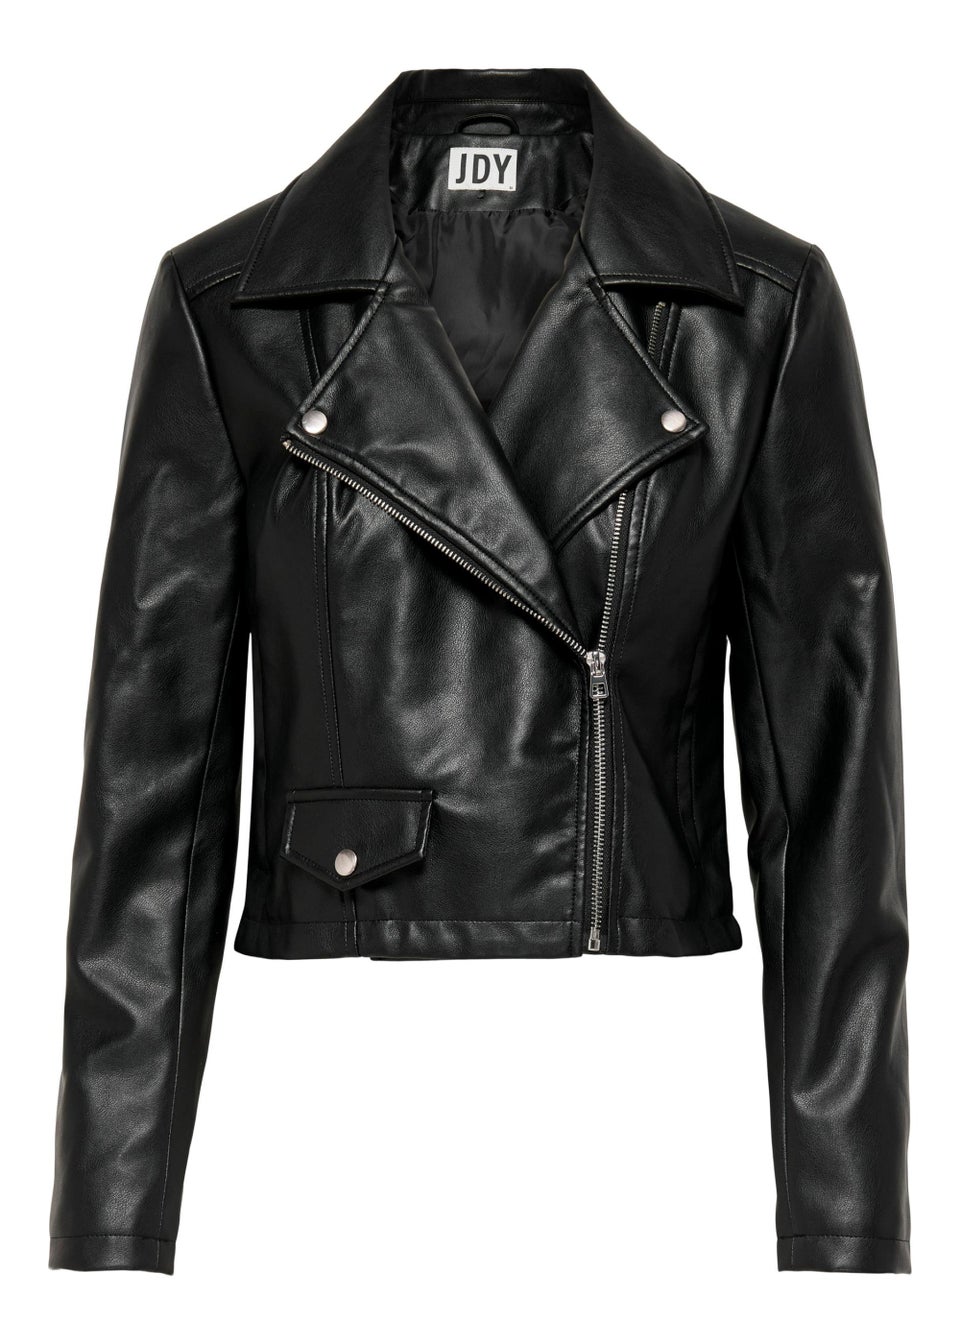 JDY Etta Black Faux Leather Jacket - Matalan